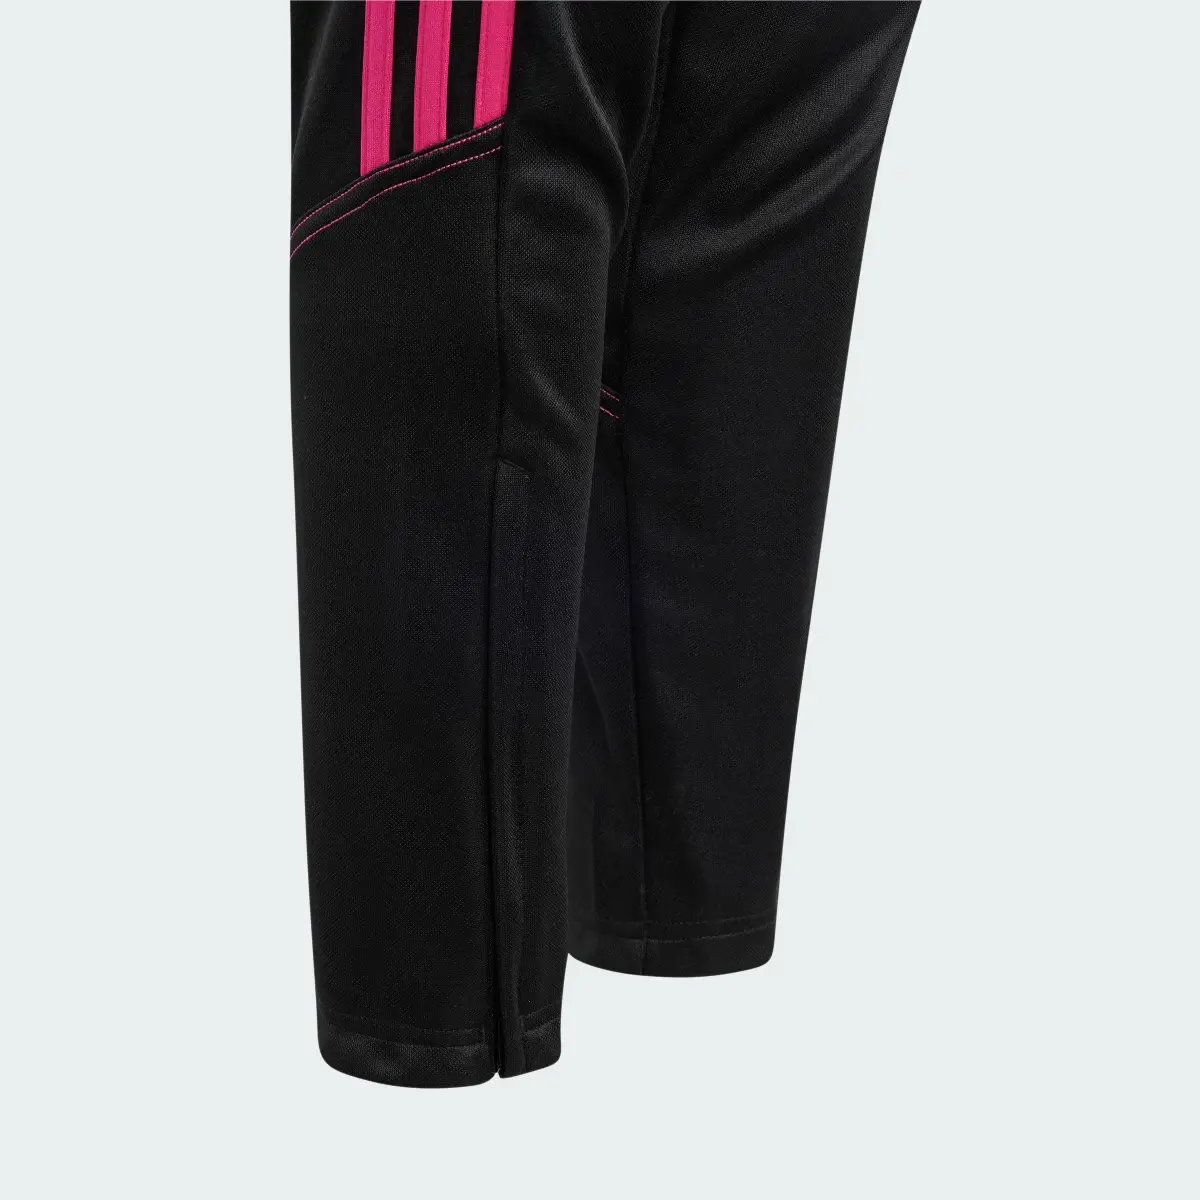 Adidas Tiro 23 Club Training Pants. 3